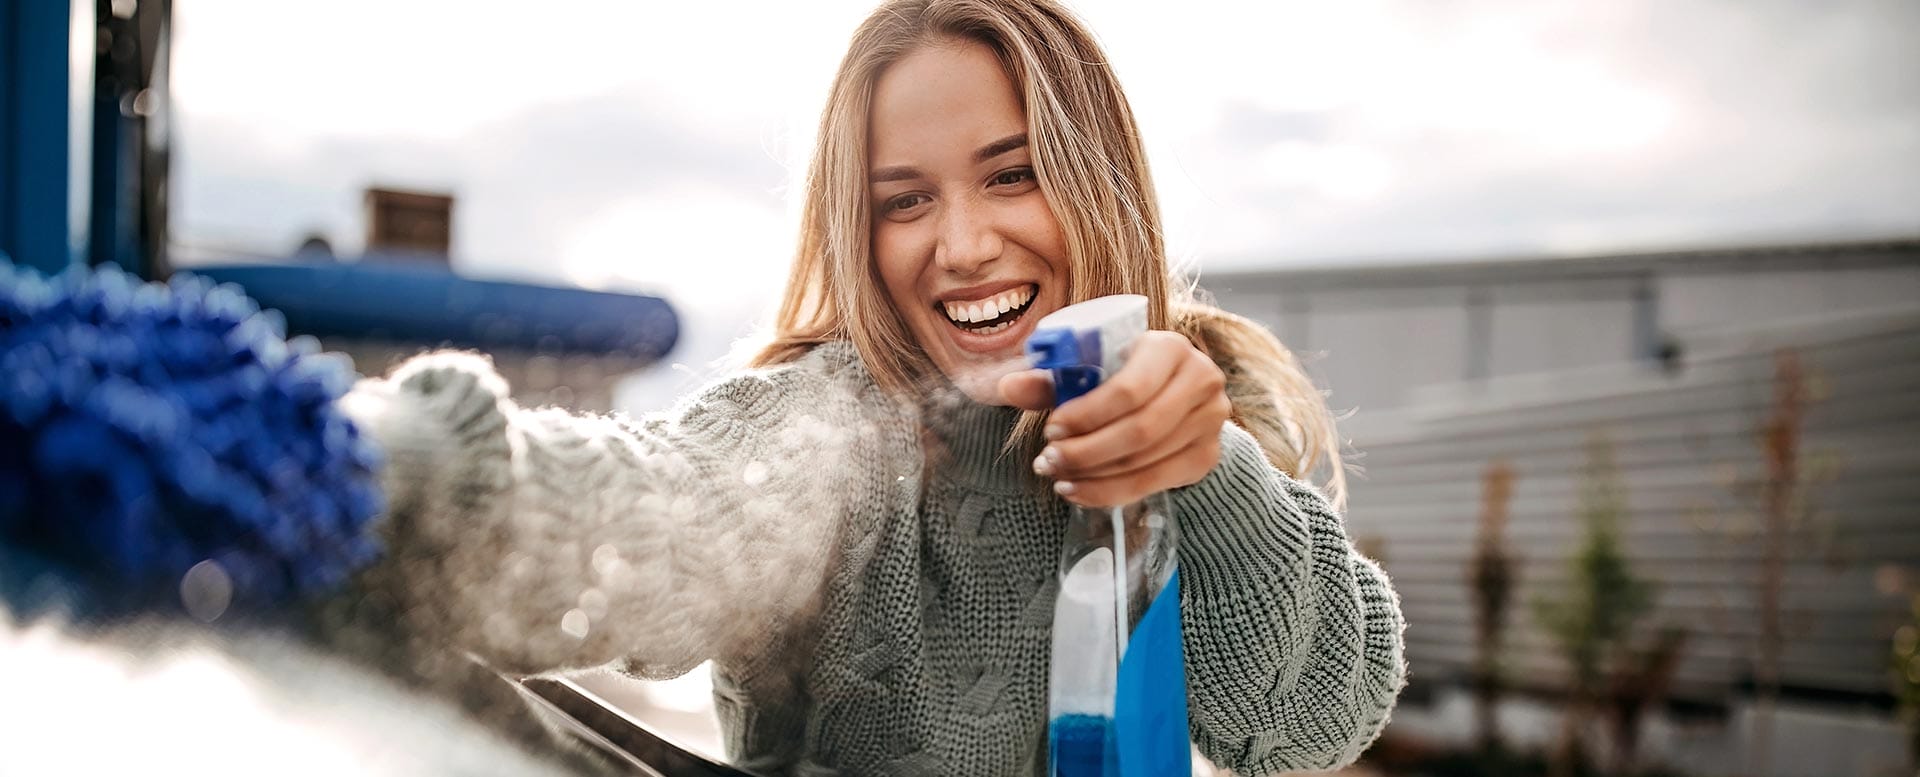 Auto sauber halten: 9 Tipps & Tricks